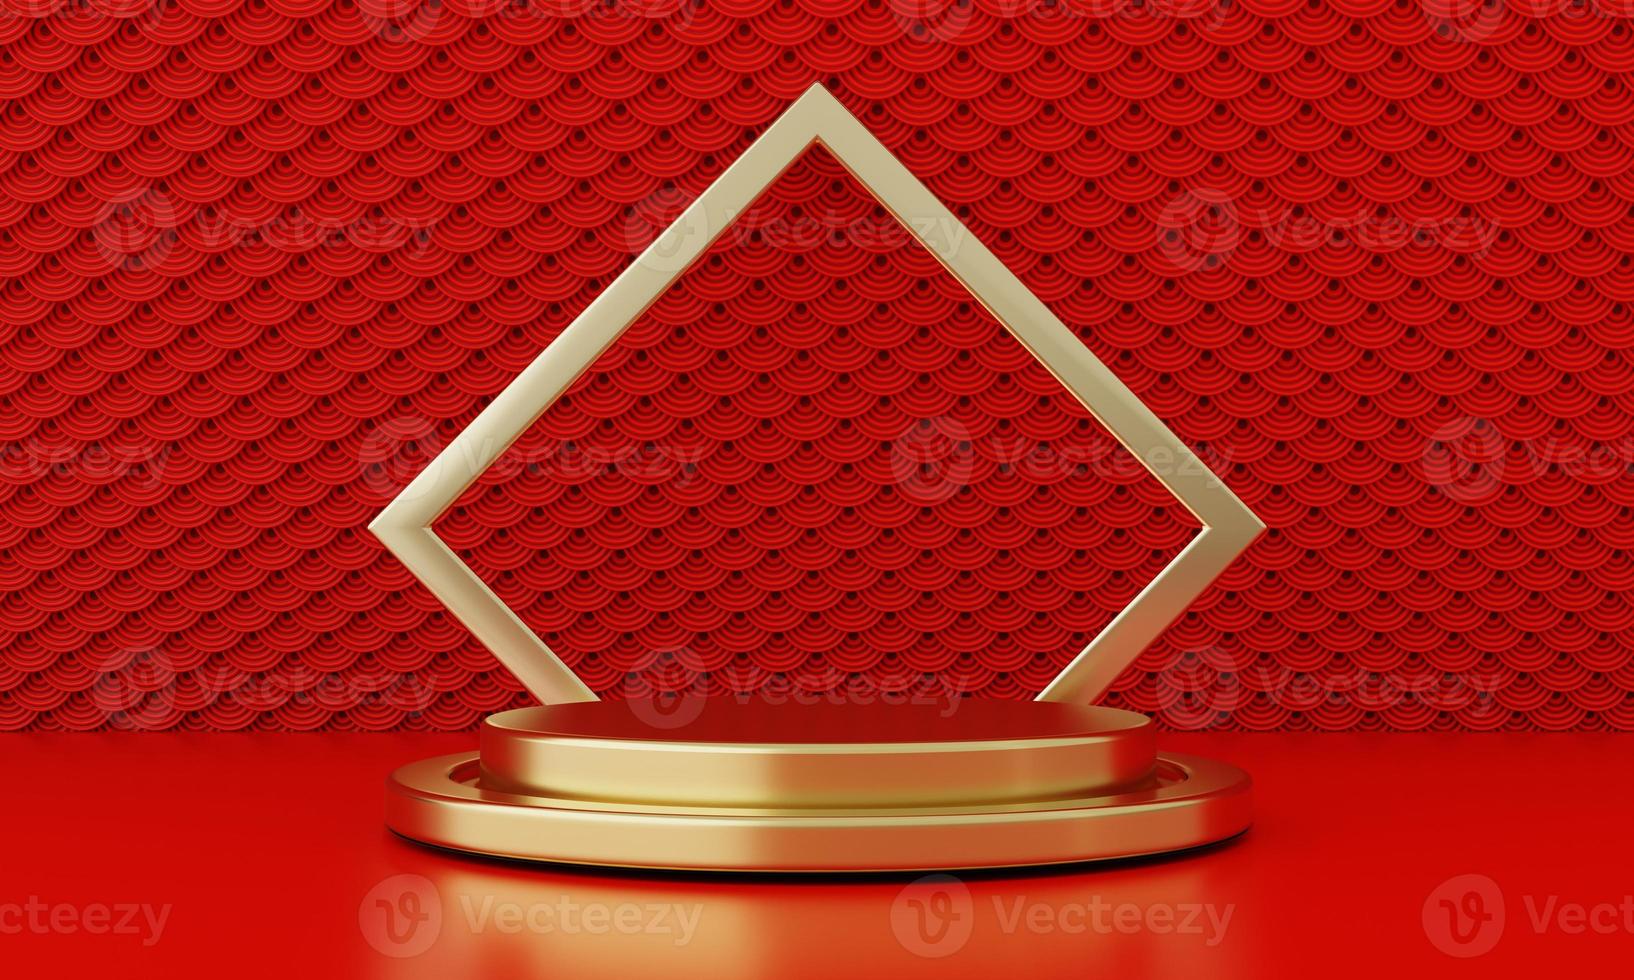 año nuevo chino rojo estilo moderno escaparate de productos de un podio con marco de anillo dorado fondo de patrón de estilo japonés. concepto de fiesta tradicional de felices fiestas. Representación de la ilustración 3d foto